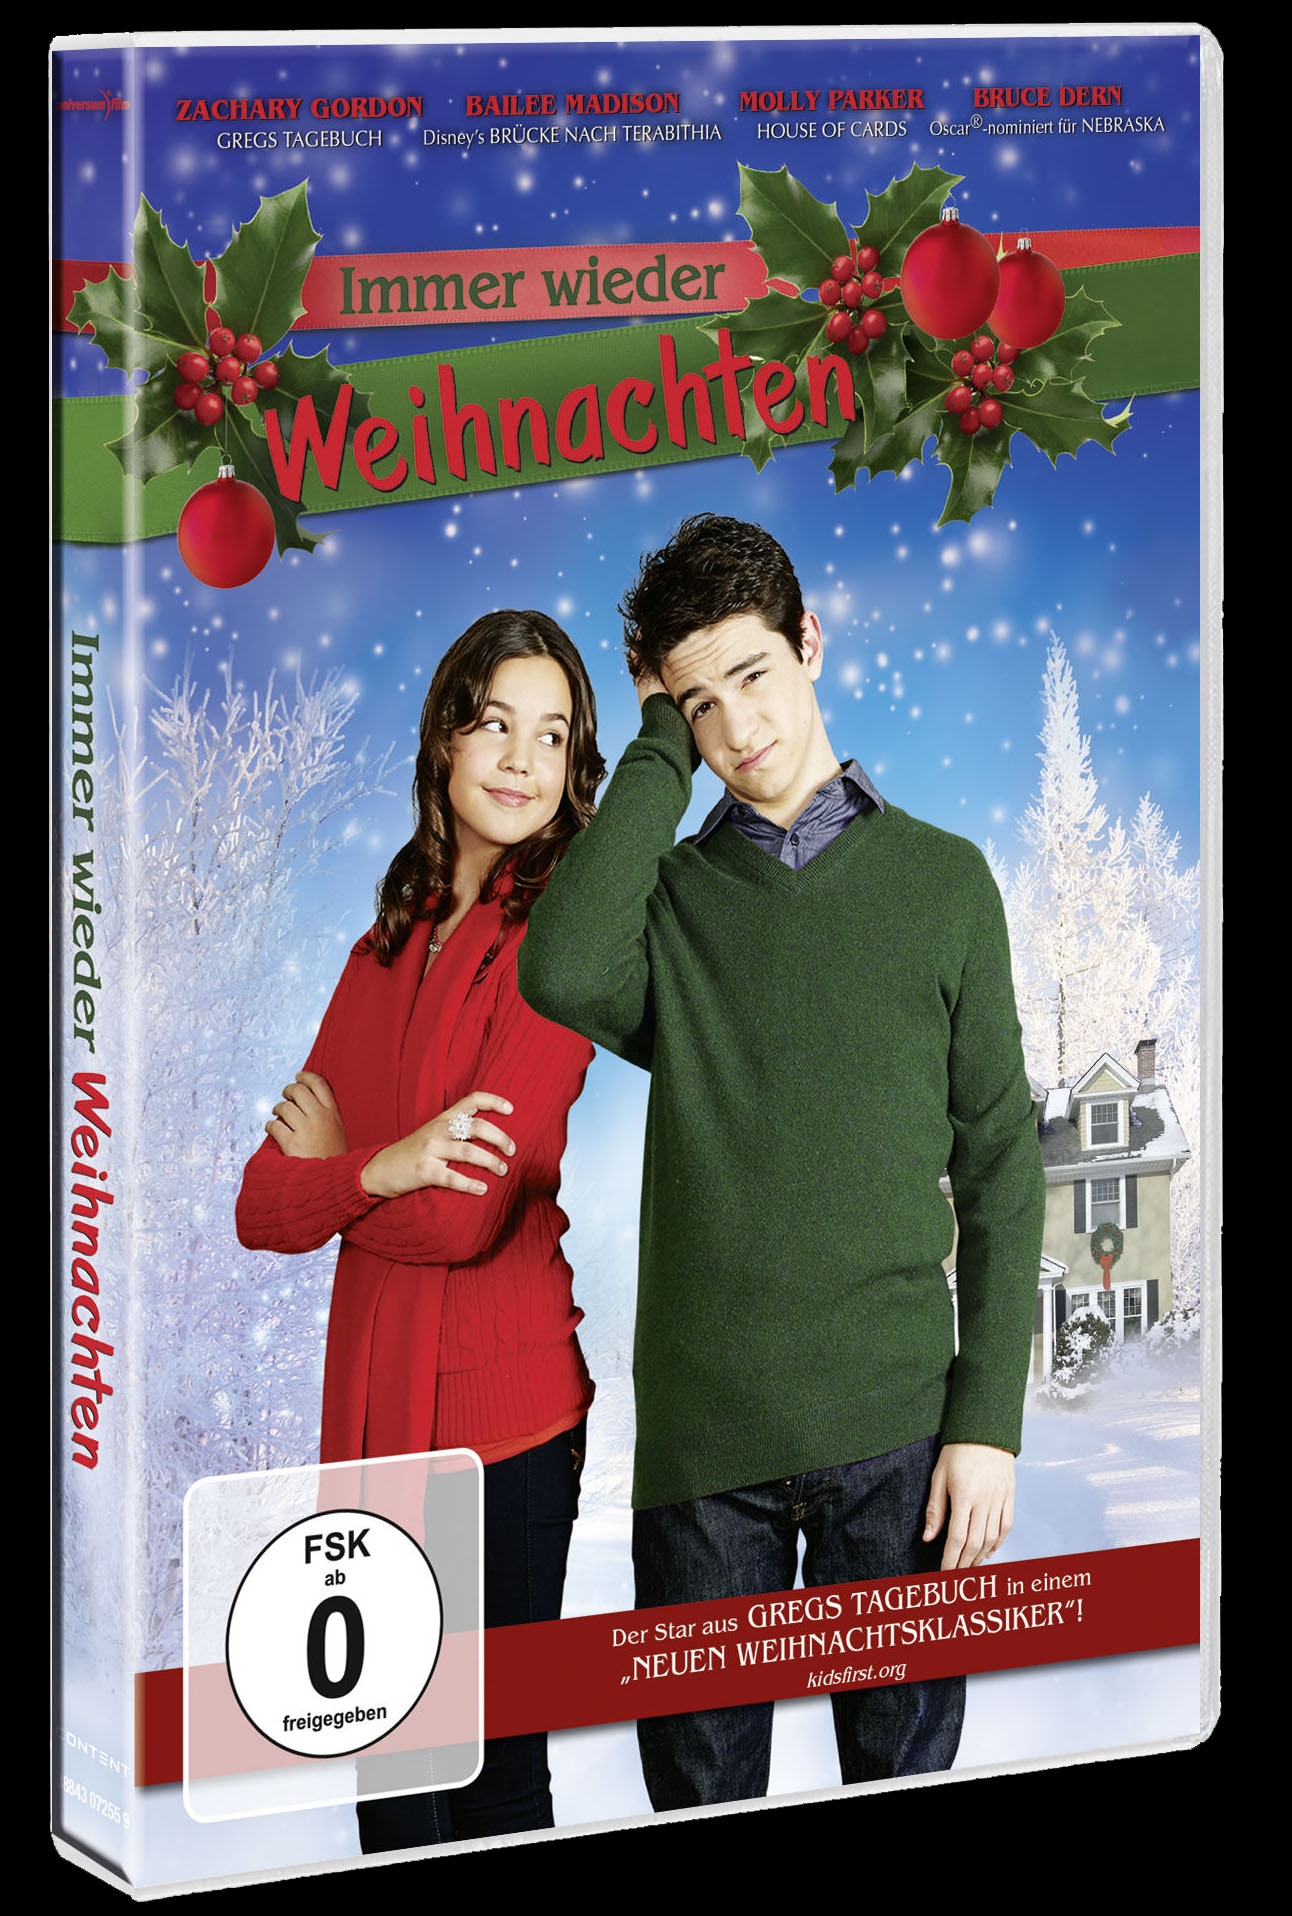 Verlosung: 3 DVDs von „Immer wieder Weihnachten“ zu gewinnen!